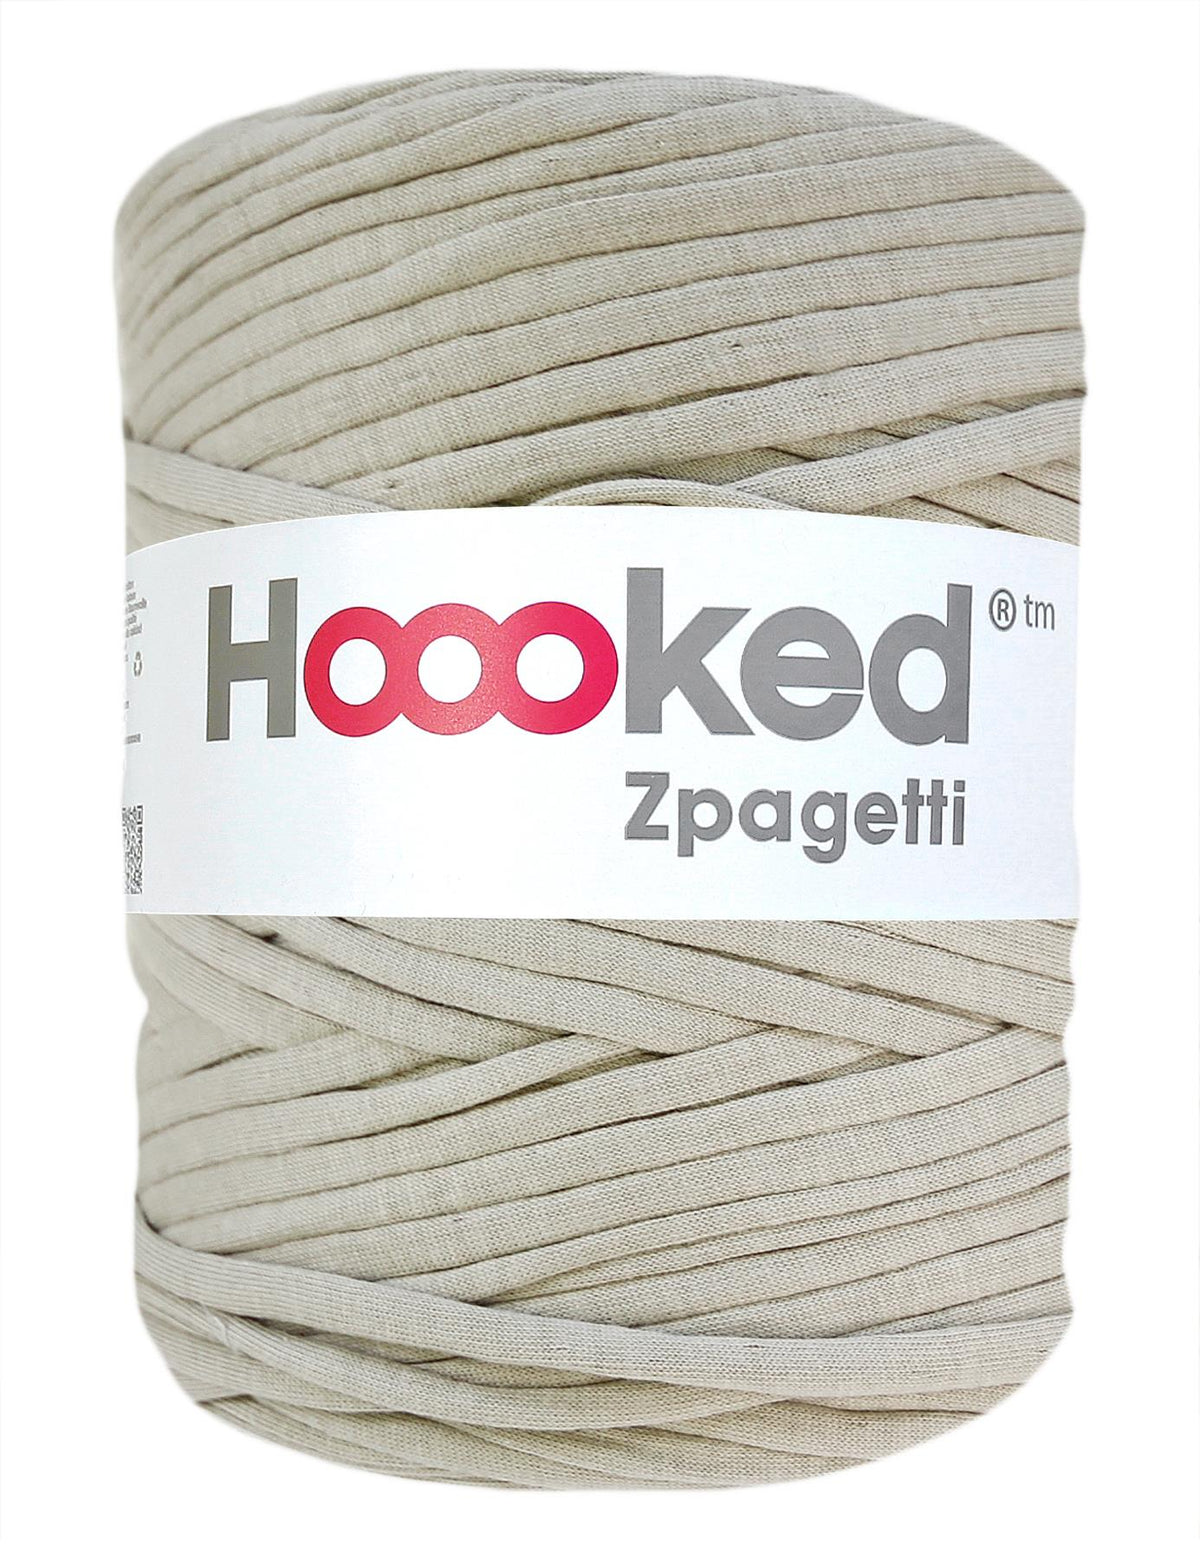 Misty grey t-shirt yarn by Hoooked Zpagetti (100-120m)